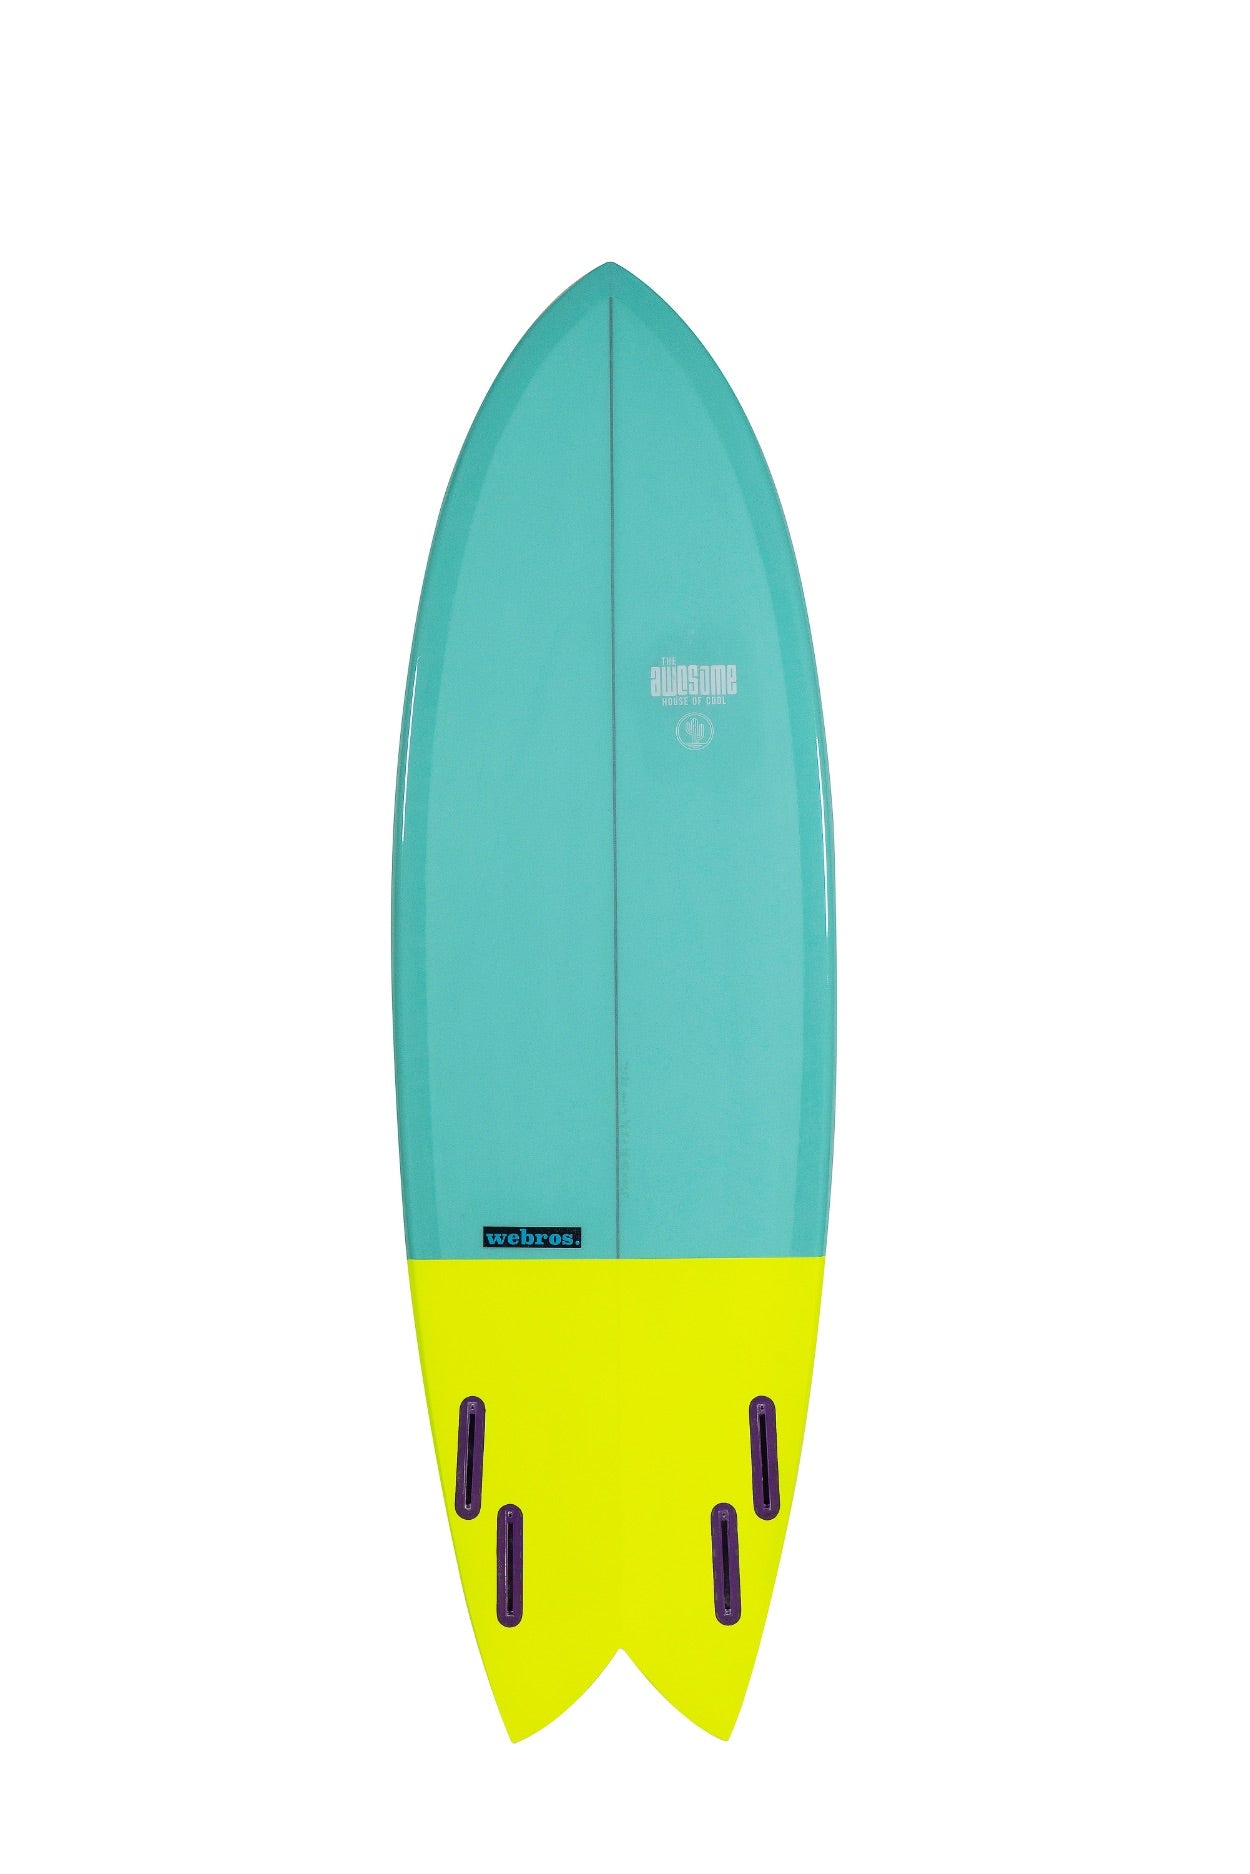 Surfboard "Webros"